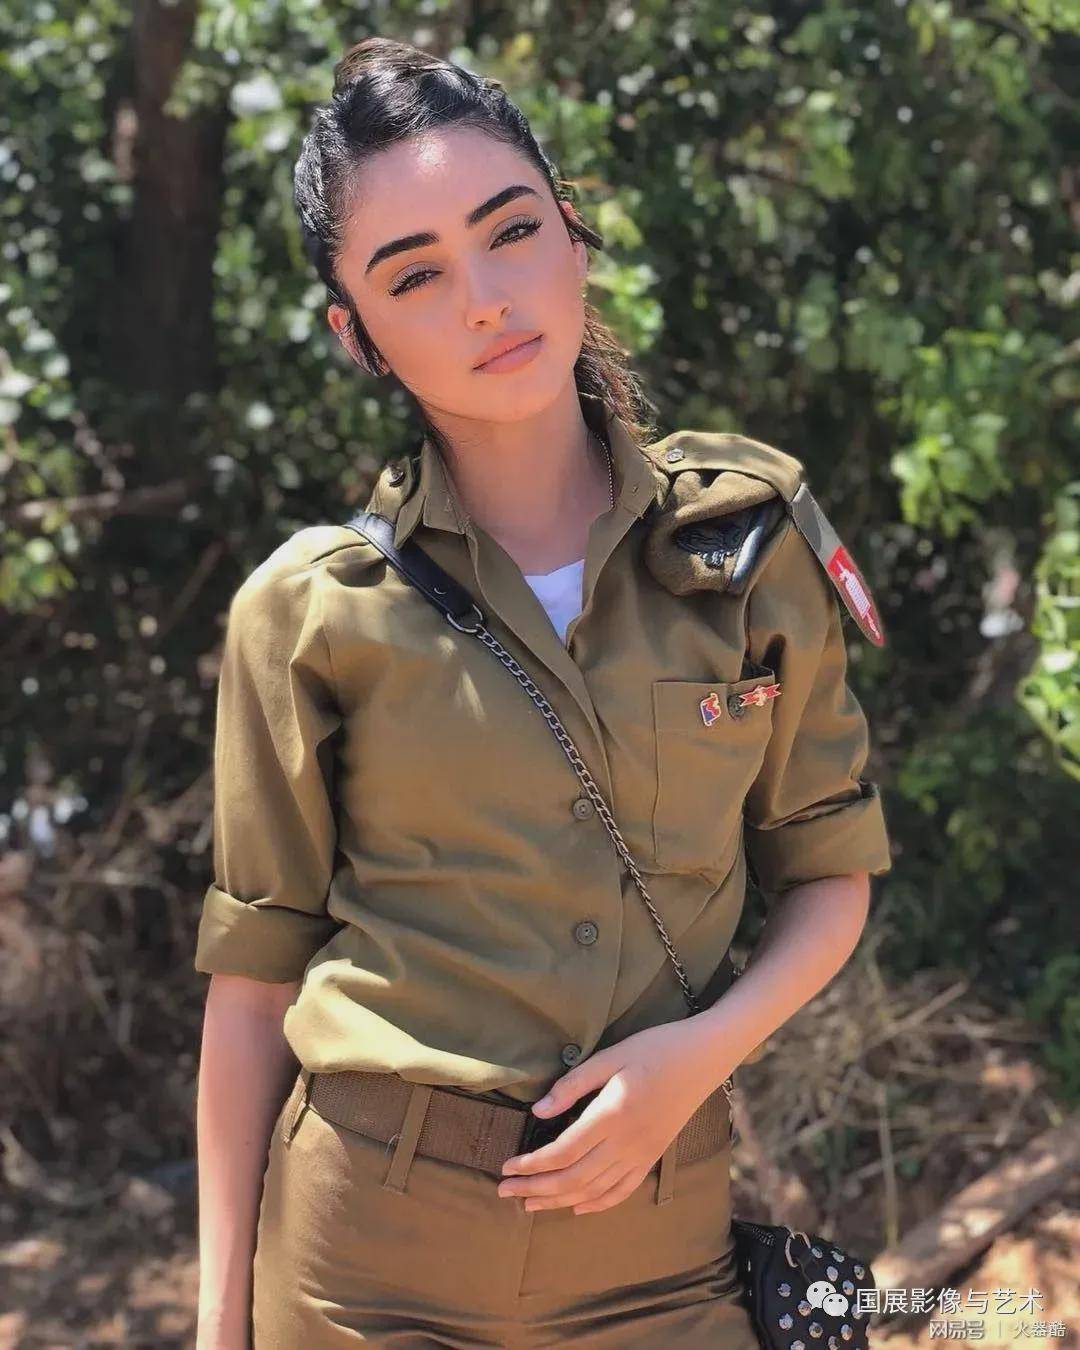 以色列的女兵,魔鬼身材,真惊艳!